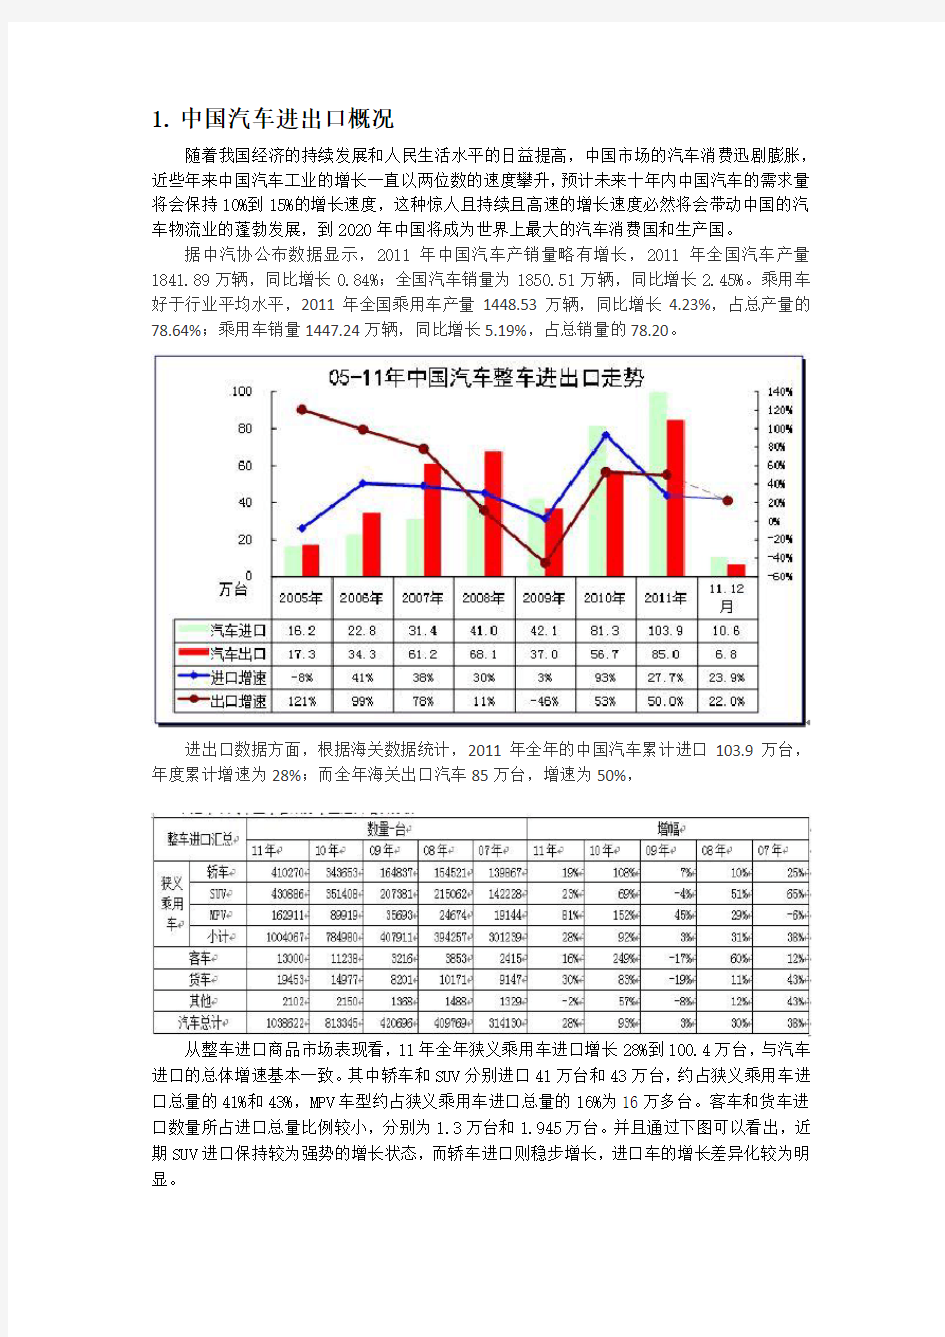 中国汽车进出口数据分析